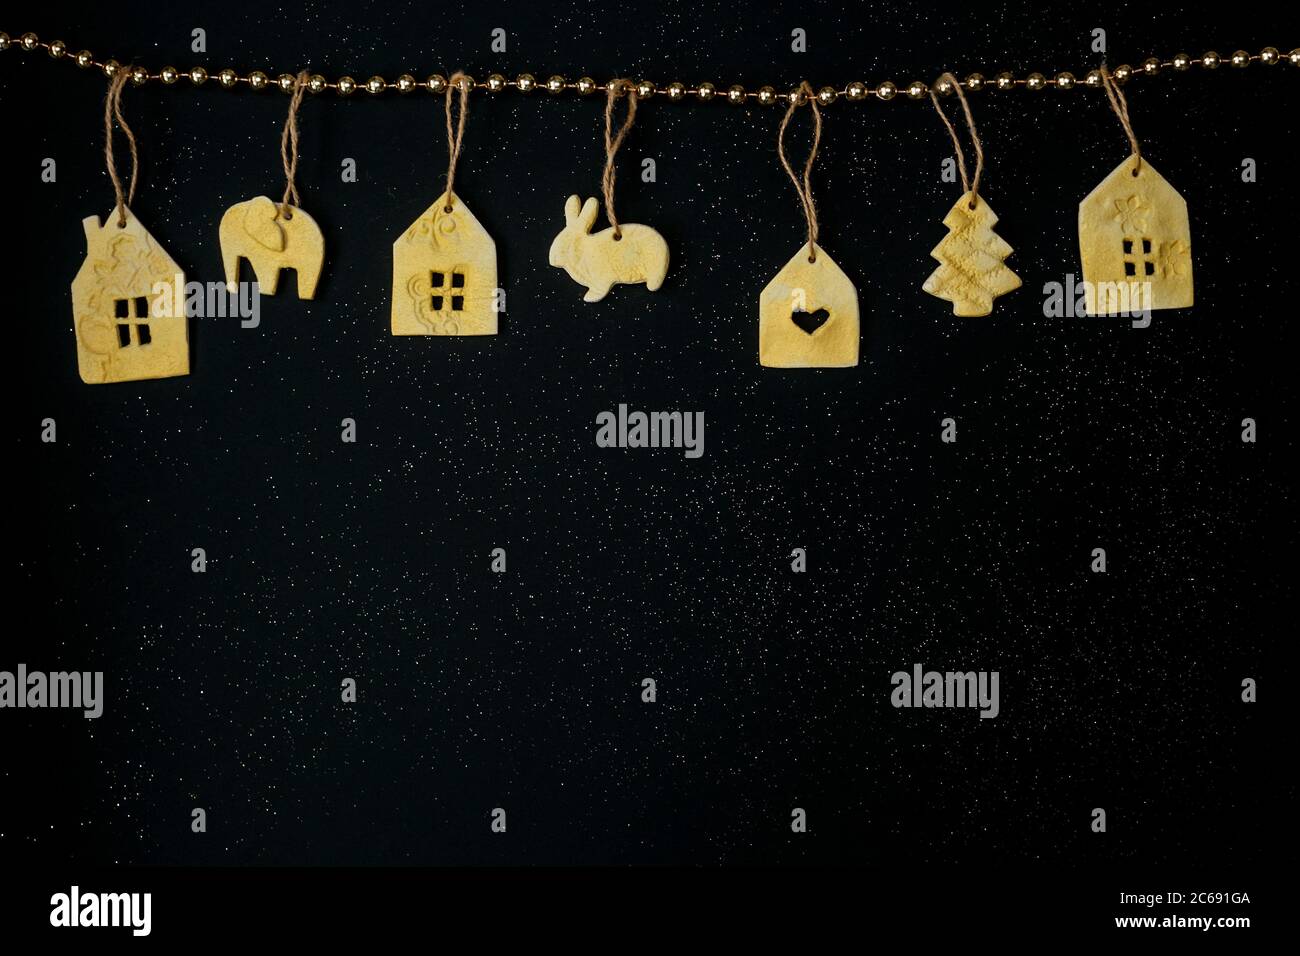 Hermosa decoración de Navidad con juguetes hechos a mano y nieve sobre fondo estrellas negras. Diseño plano. Espacio de copia. Horizontal. Foto de stock